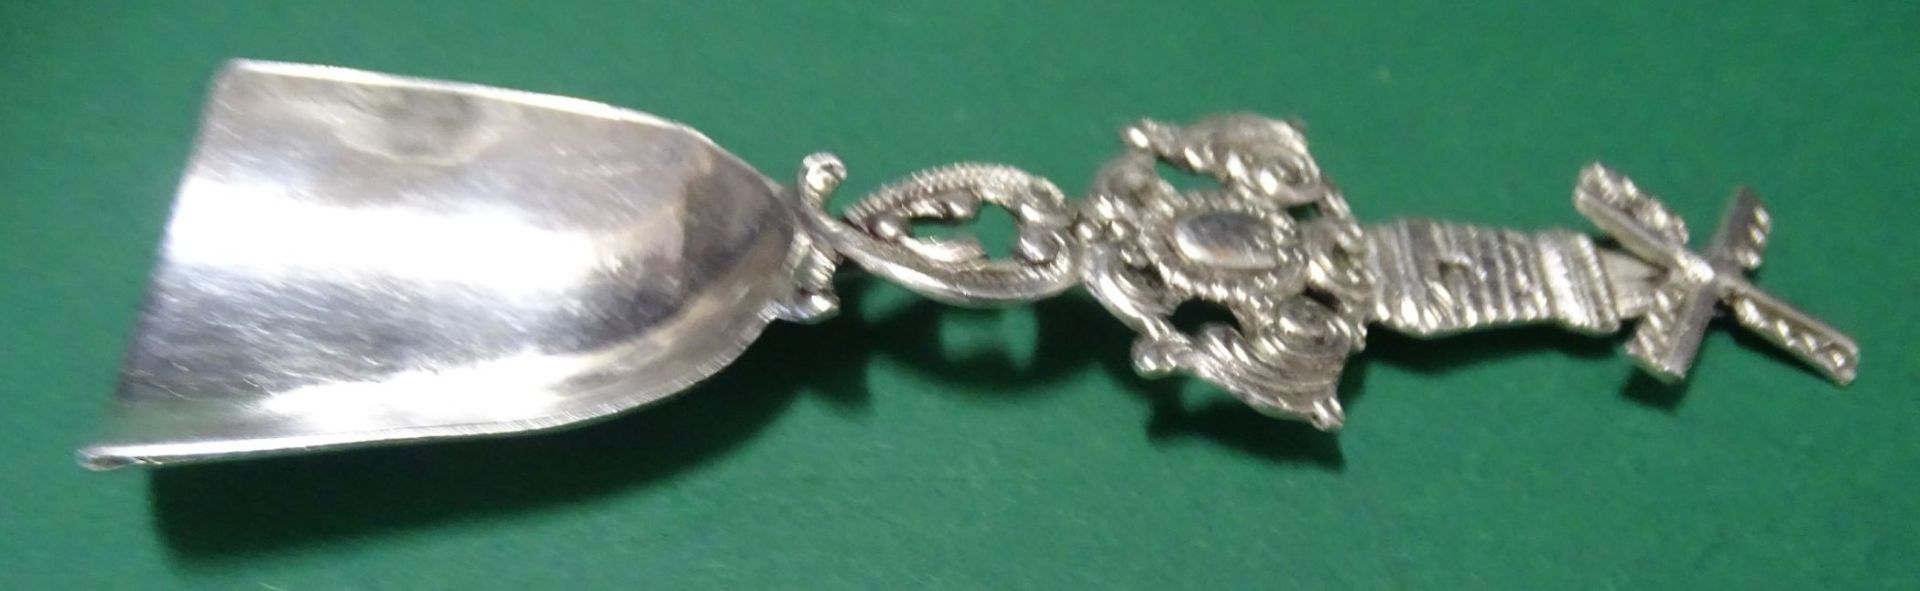 Zuckerschaufel, Silber-800- mit Windmühle, Rad drehbar, L-10,5 cm, 18 gr - Bild 2 aus 5